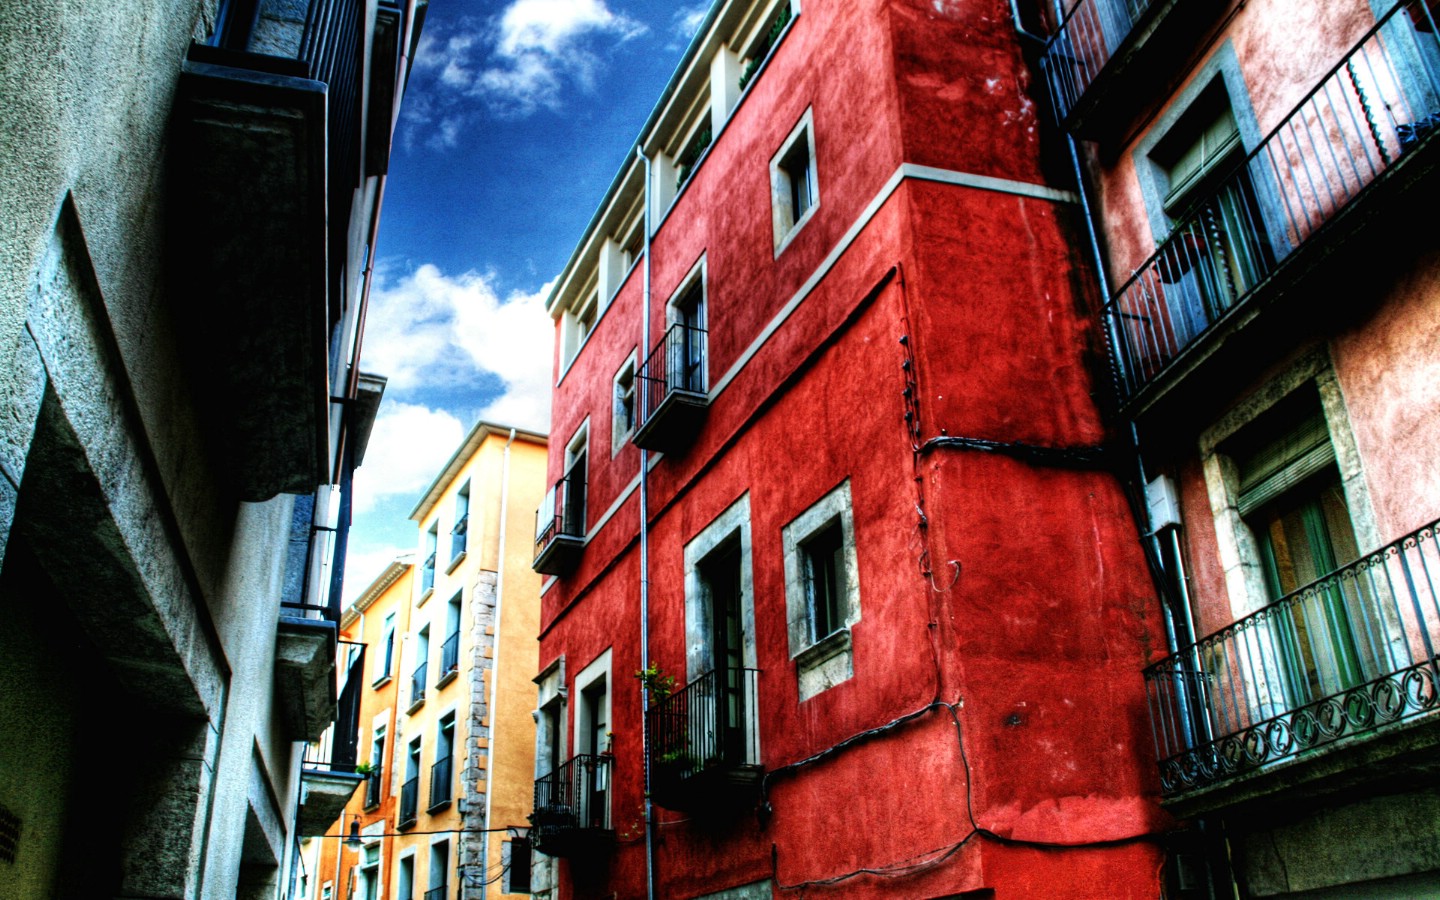 壁纸1440x900HDR 西班牙城市映像 红房子 西班牙 Girona 赫罗纳城市风景壁纸 HDR 西班牙城市映像壁纸 HDR 西班牙城市映像图片 HDR 西班牙城市映像素材 人文壁纸 人文图库 人文图片素材桌面壁纸